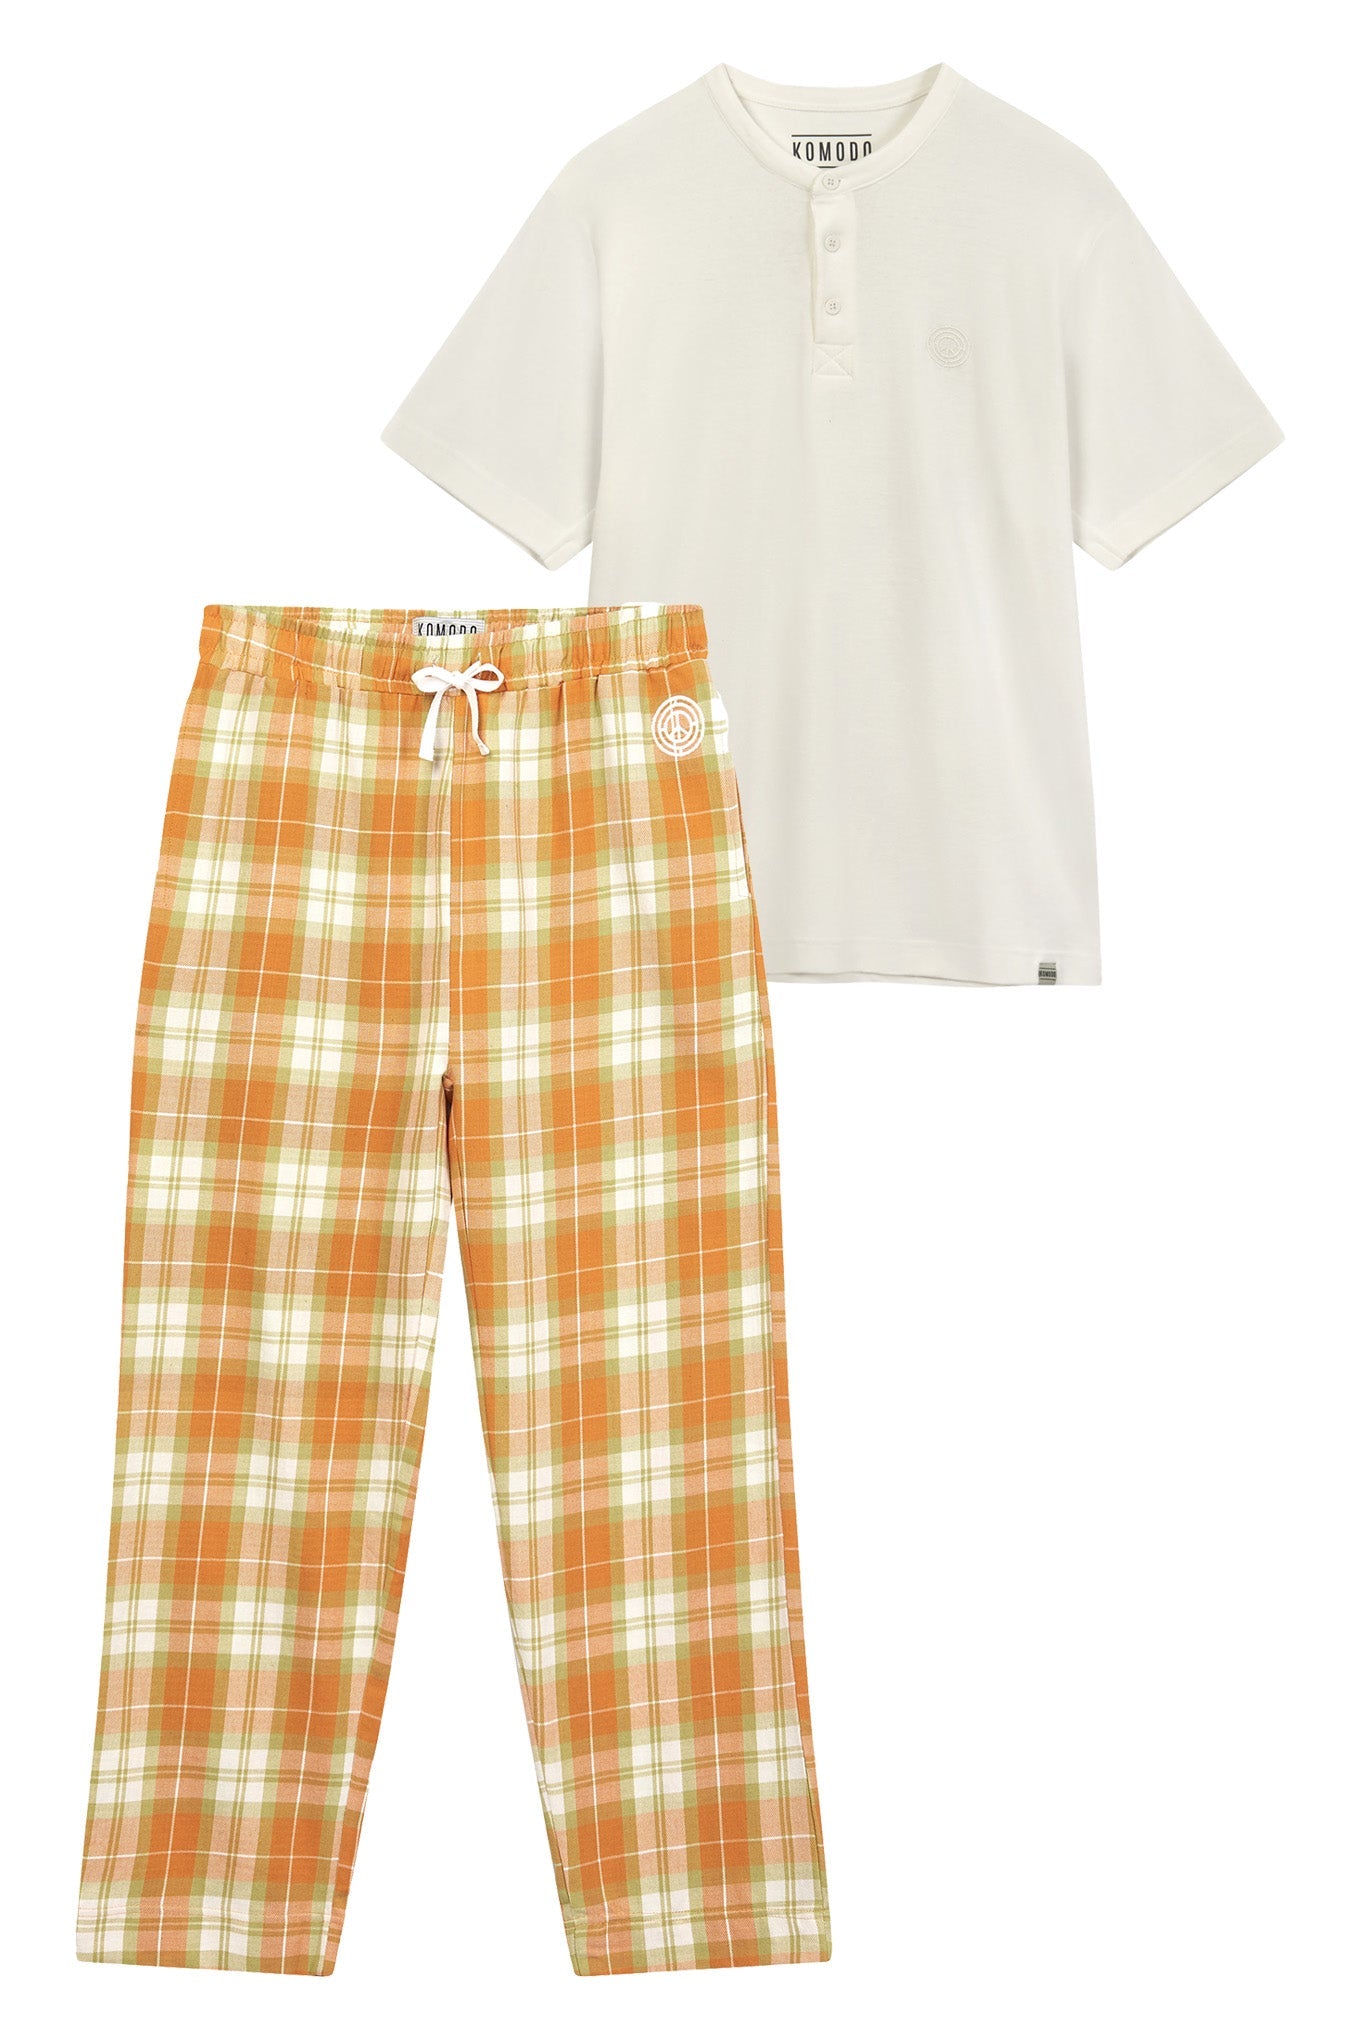 Orange-weisses Pyjama Set JIM JAM aus Bio-Baumwolle von Komodo